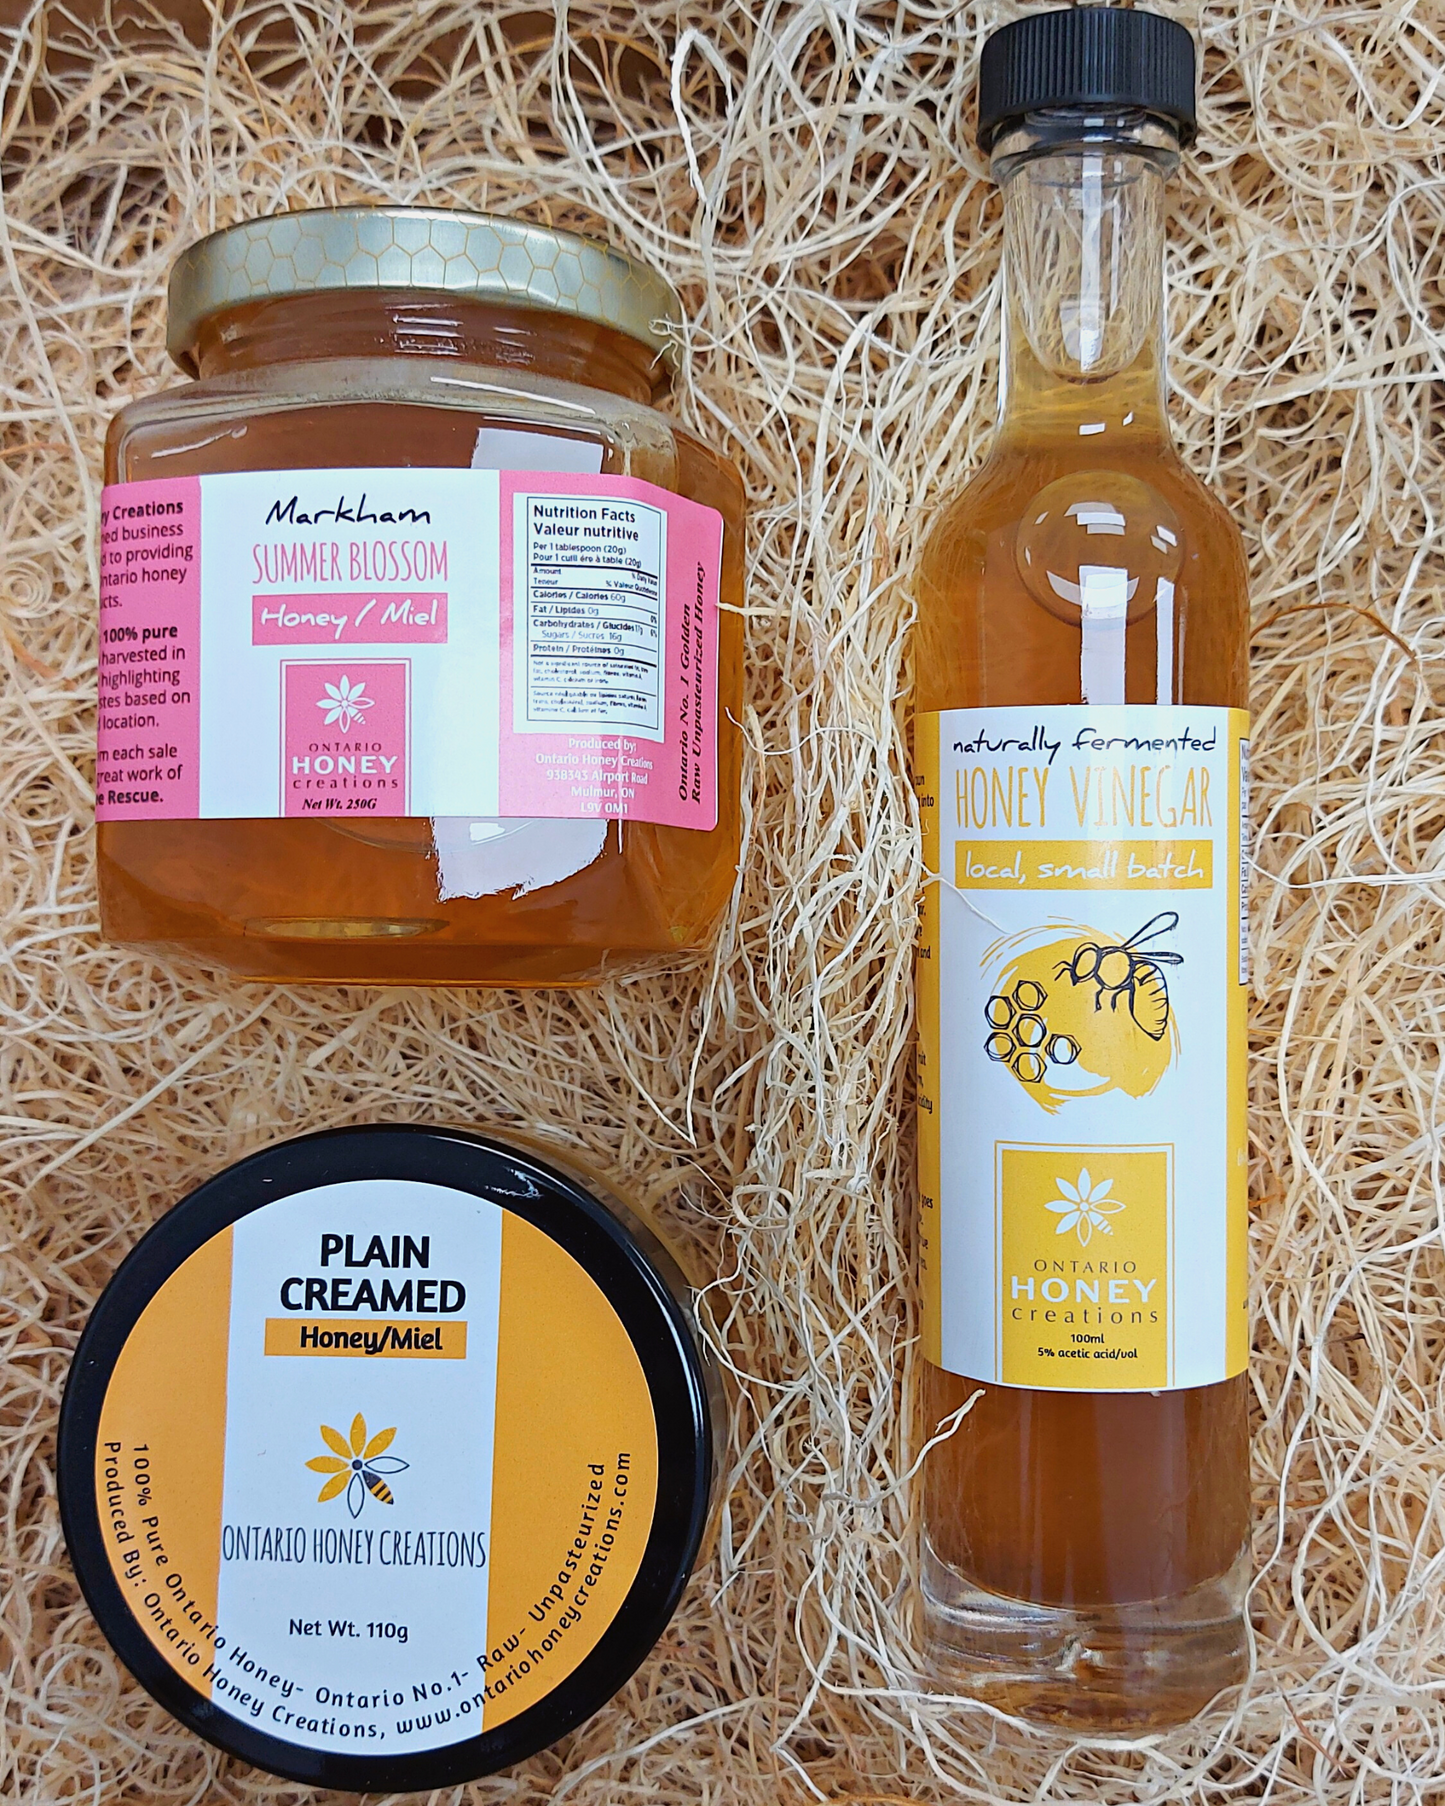 Gift box with Honey Vinegar, Plain Creamed Honey, and Summer Blossom Honey